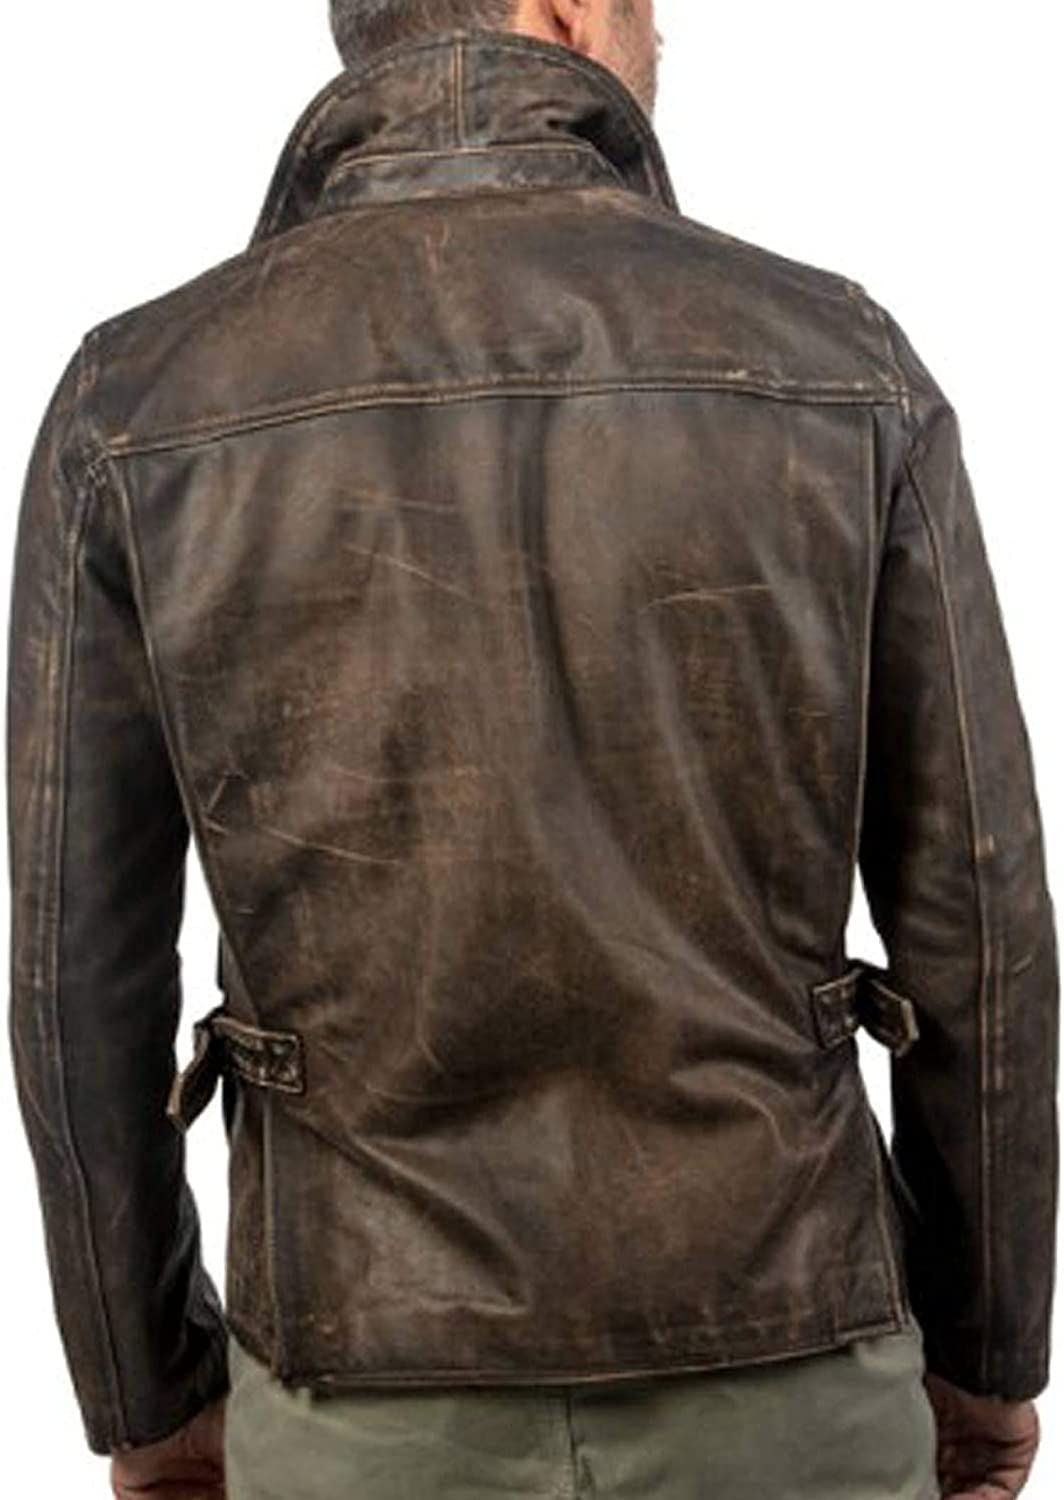 Best Indiana Jones Leather Jacket | Raiders of Lost Ark Jacket